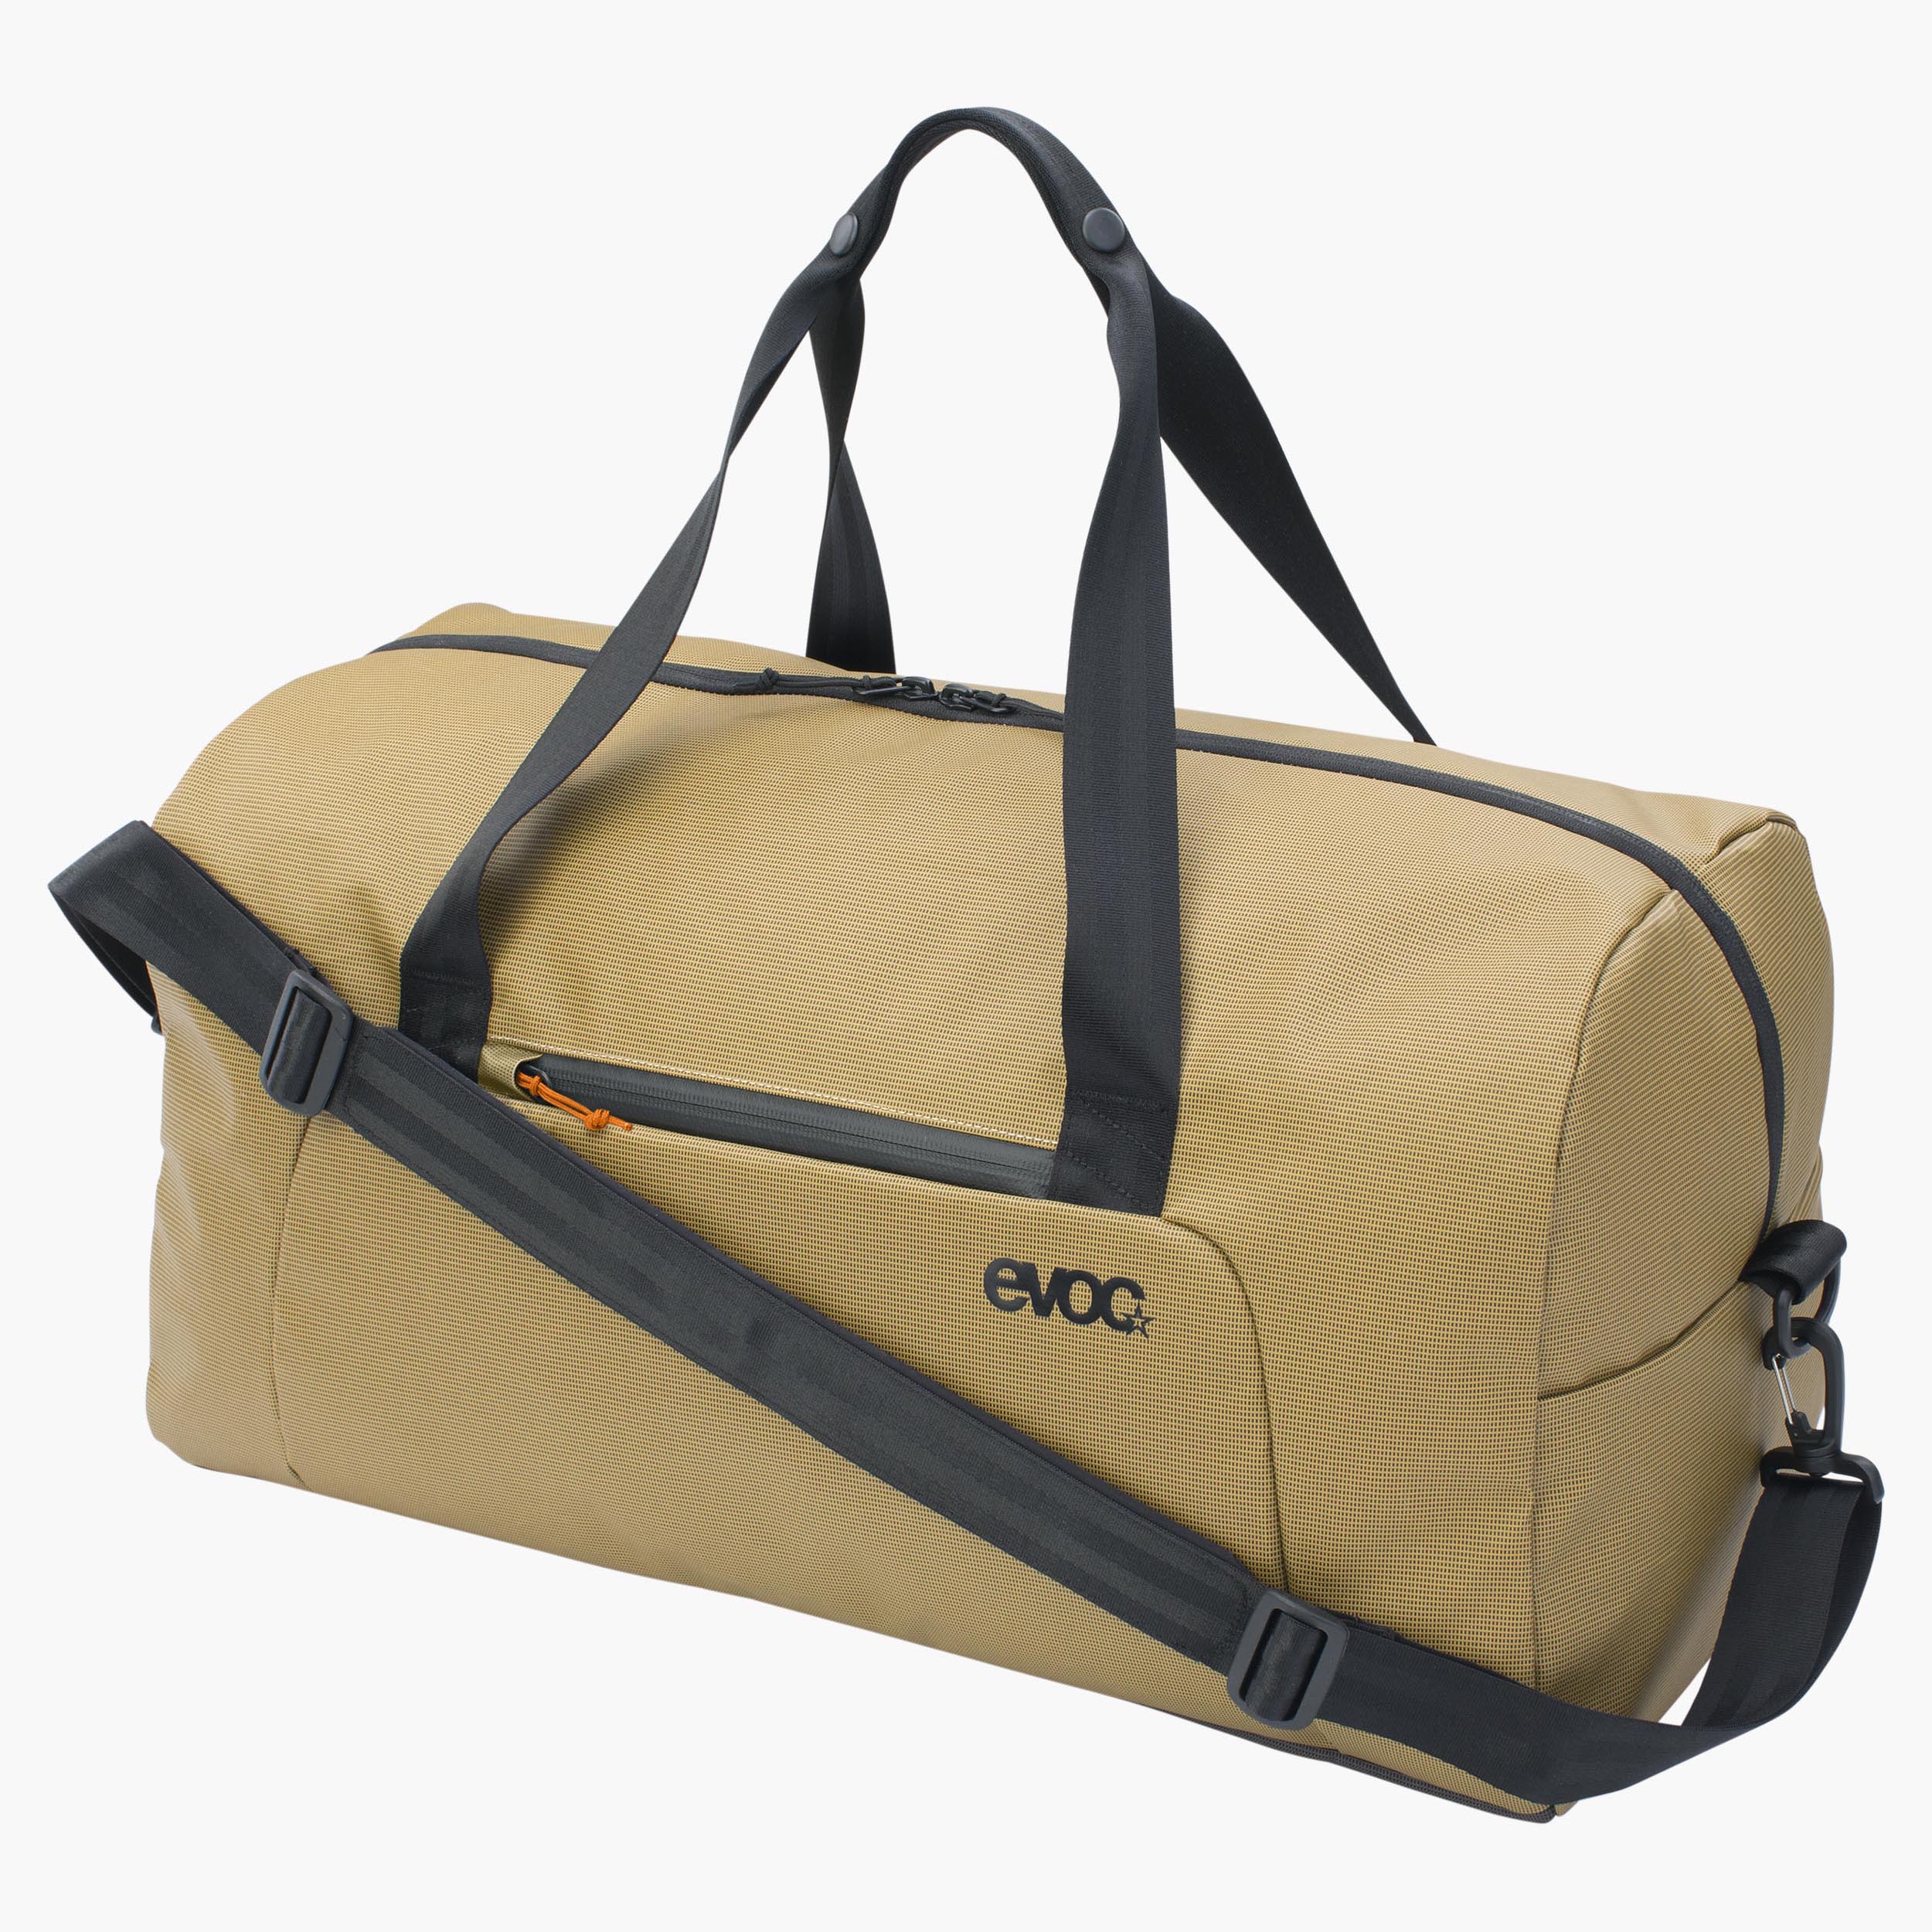 Evoc Gear Bag 55 - Luggage, Free EU Delivery